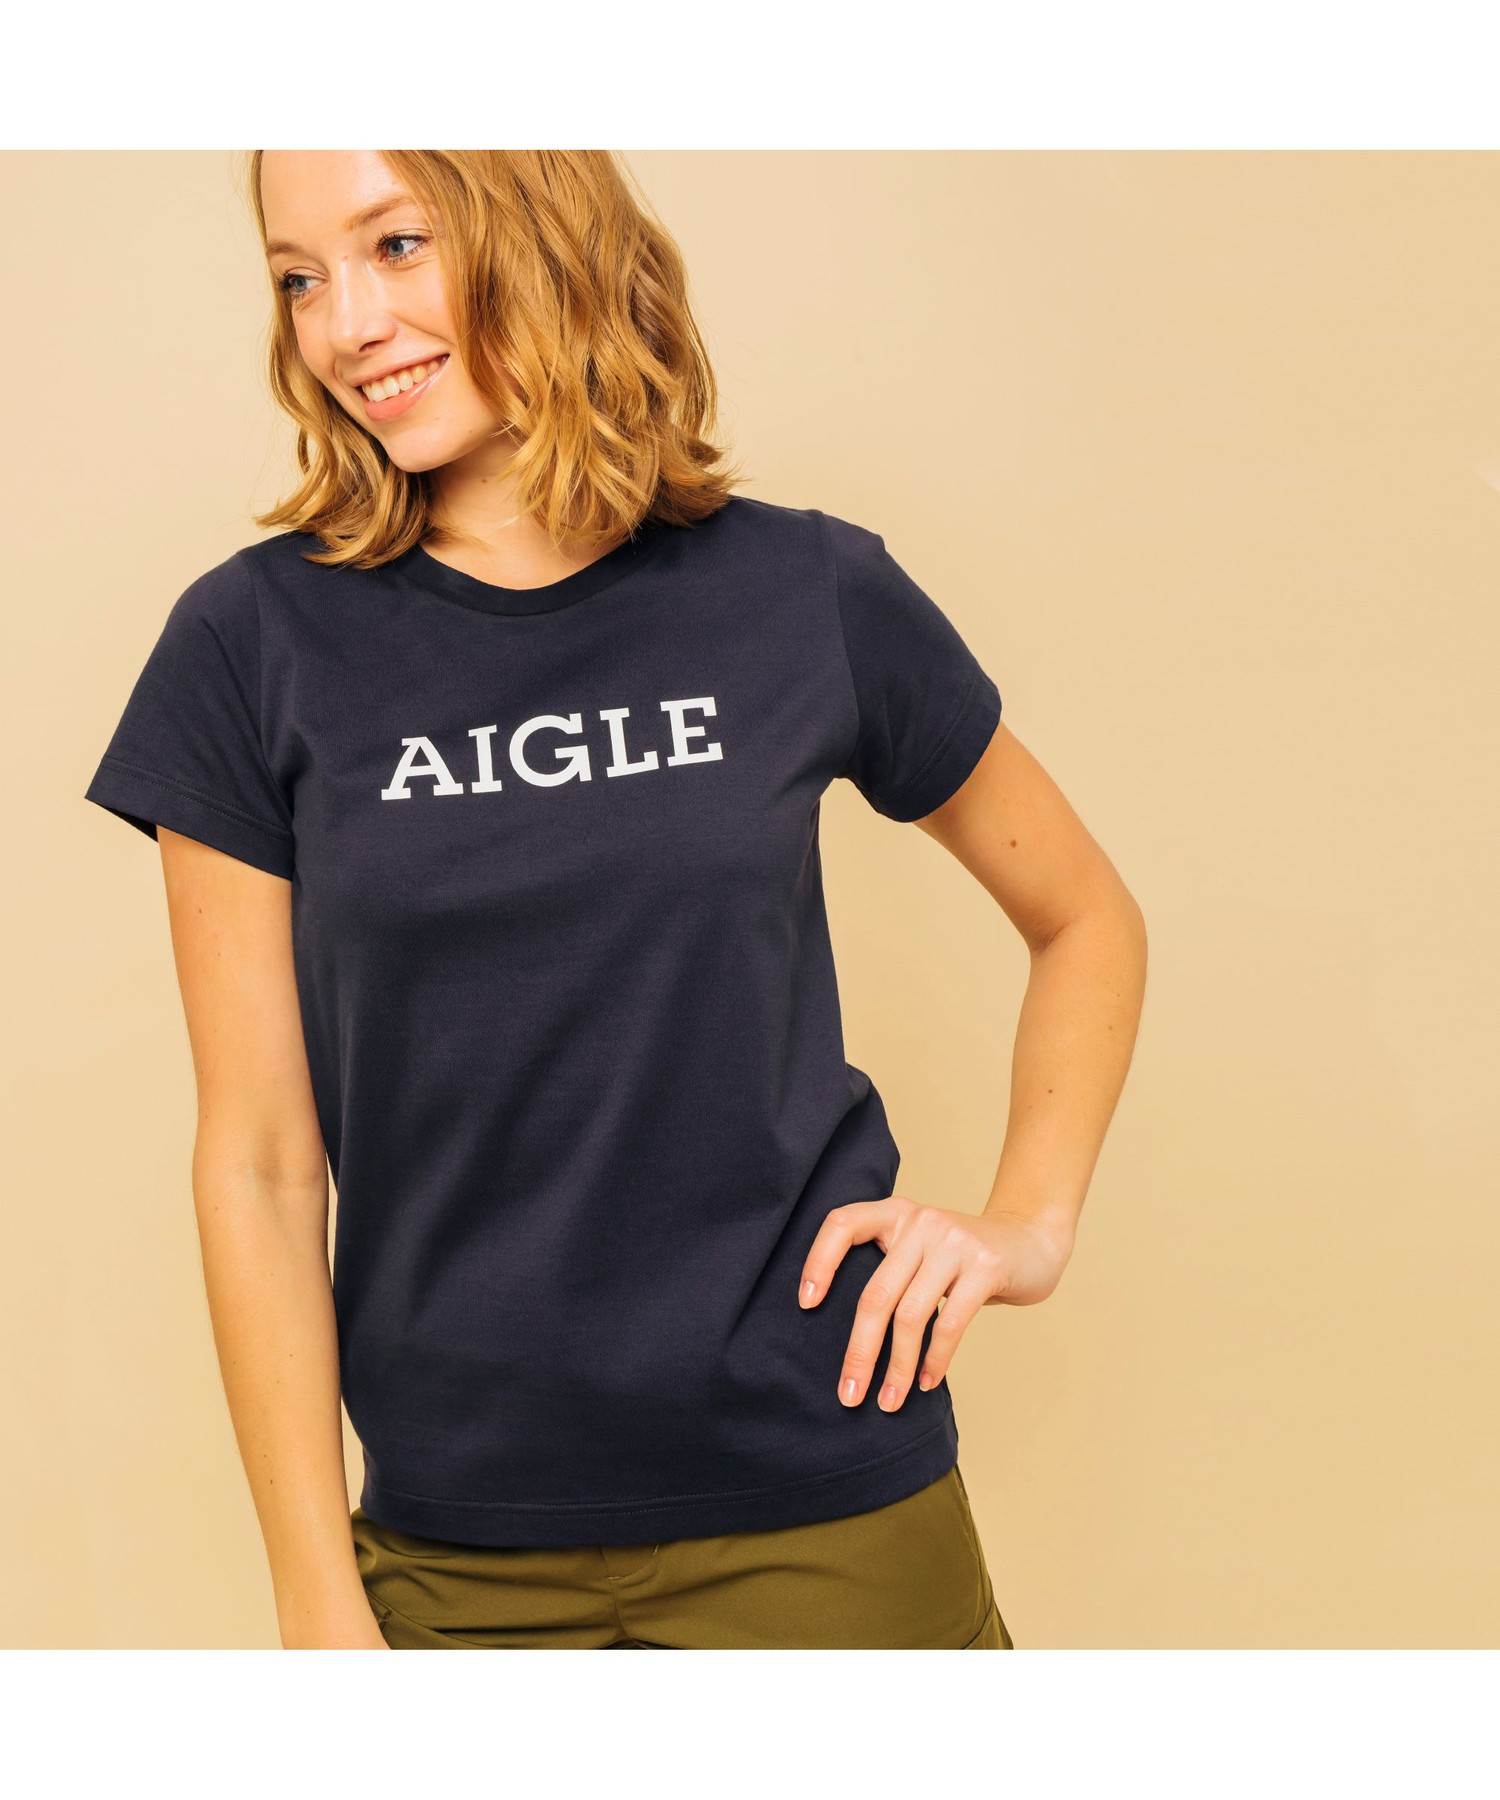 AIGLE吸水速乾 メーカー包装済 永遠の定番モデル エーグル ロゴTシャツ グラフィック